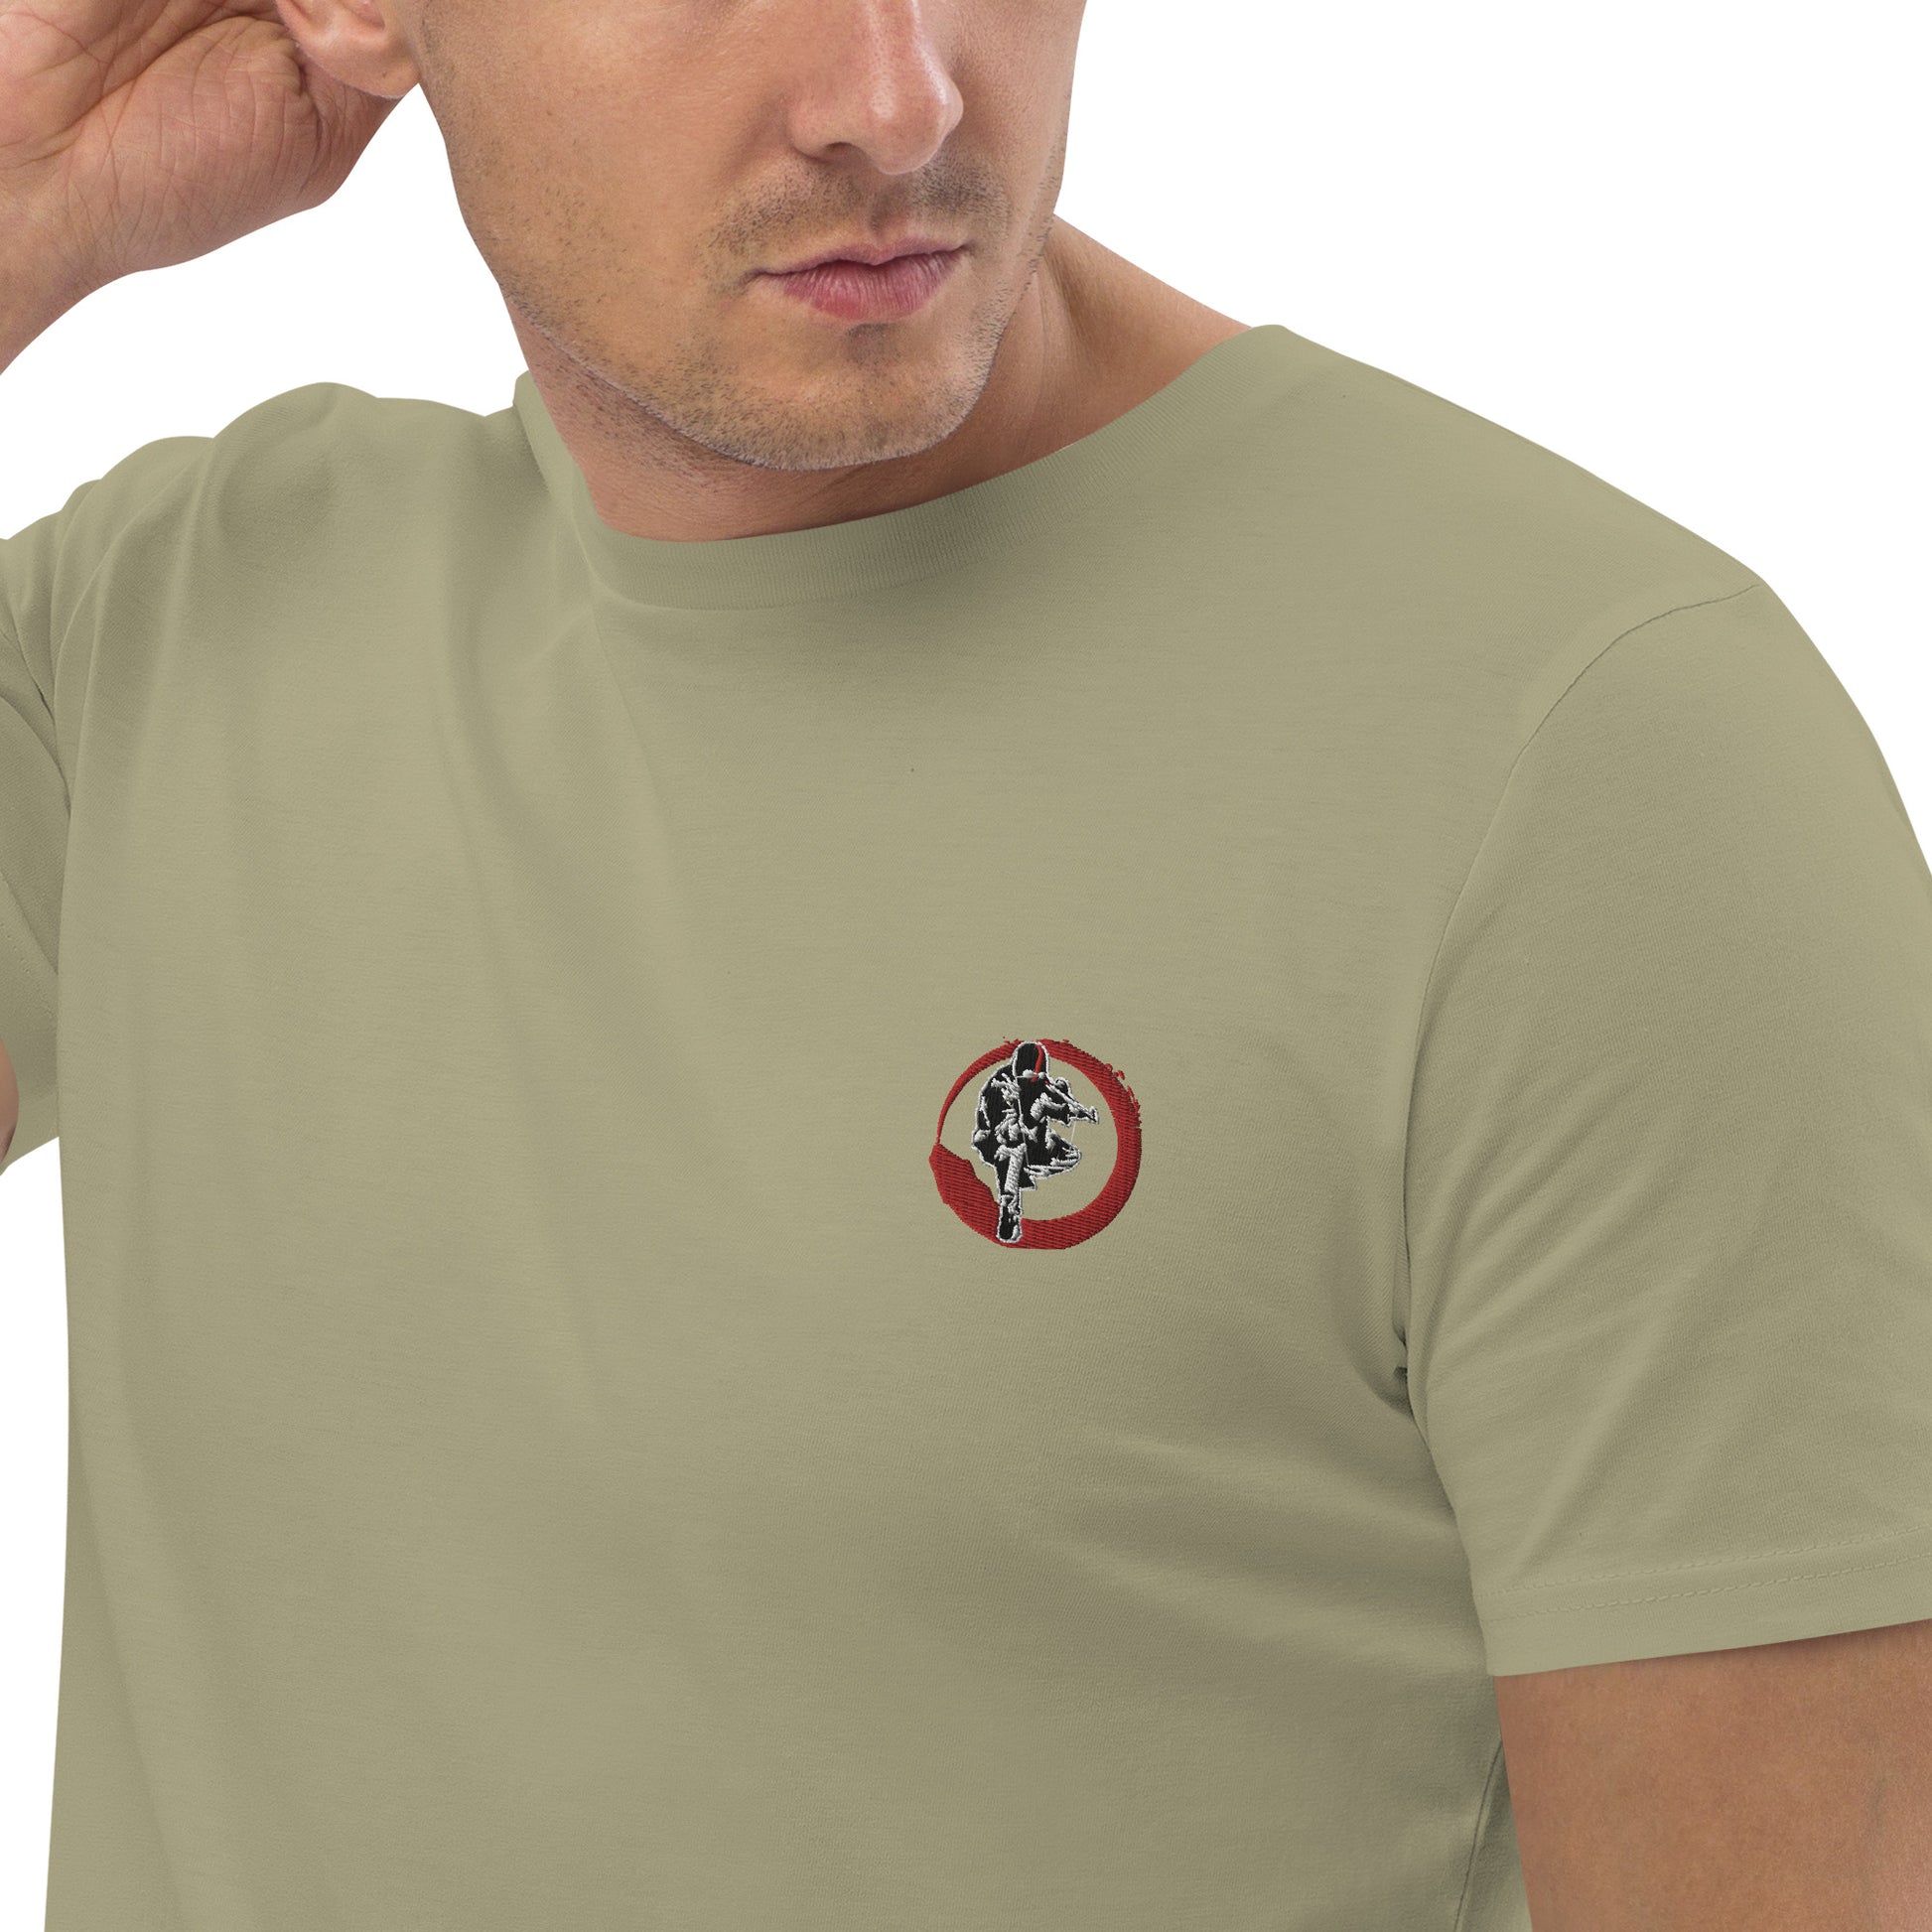 T-shirt unisexe en coton bio Ribellu Contour Rouge - Ochju Ochju Sage / S Ochju T-shirt unisexe en coton bio Ribellu Contour Rouge